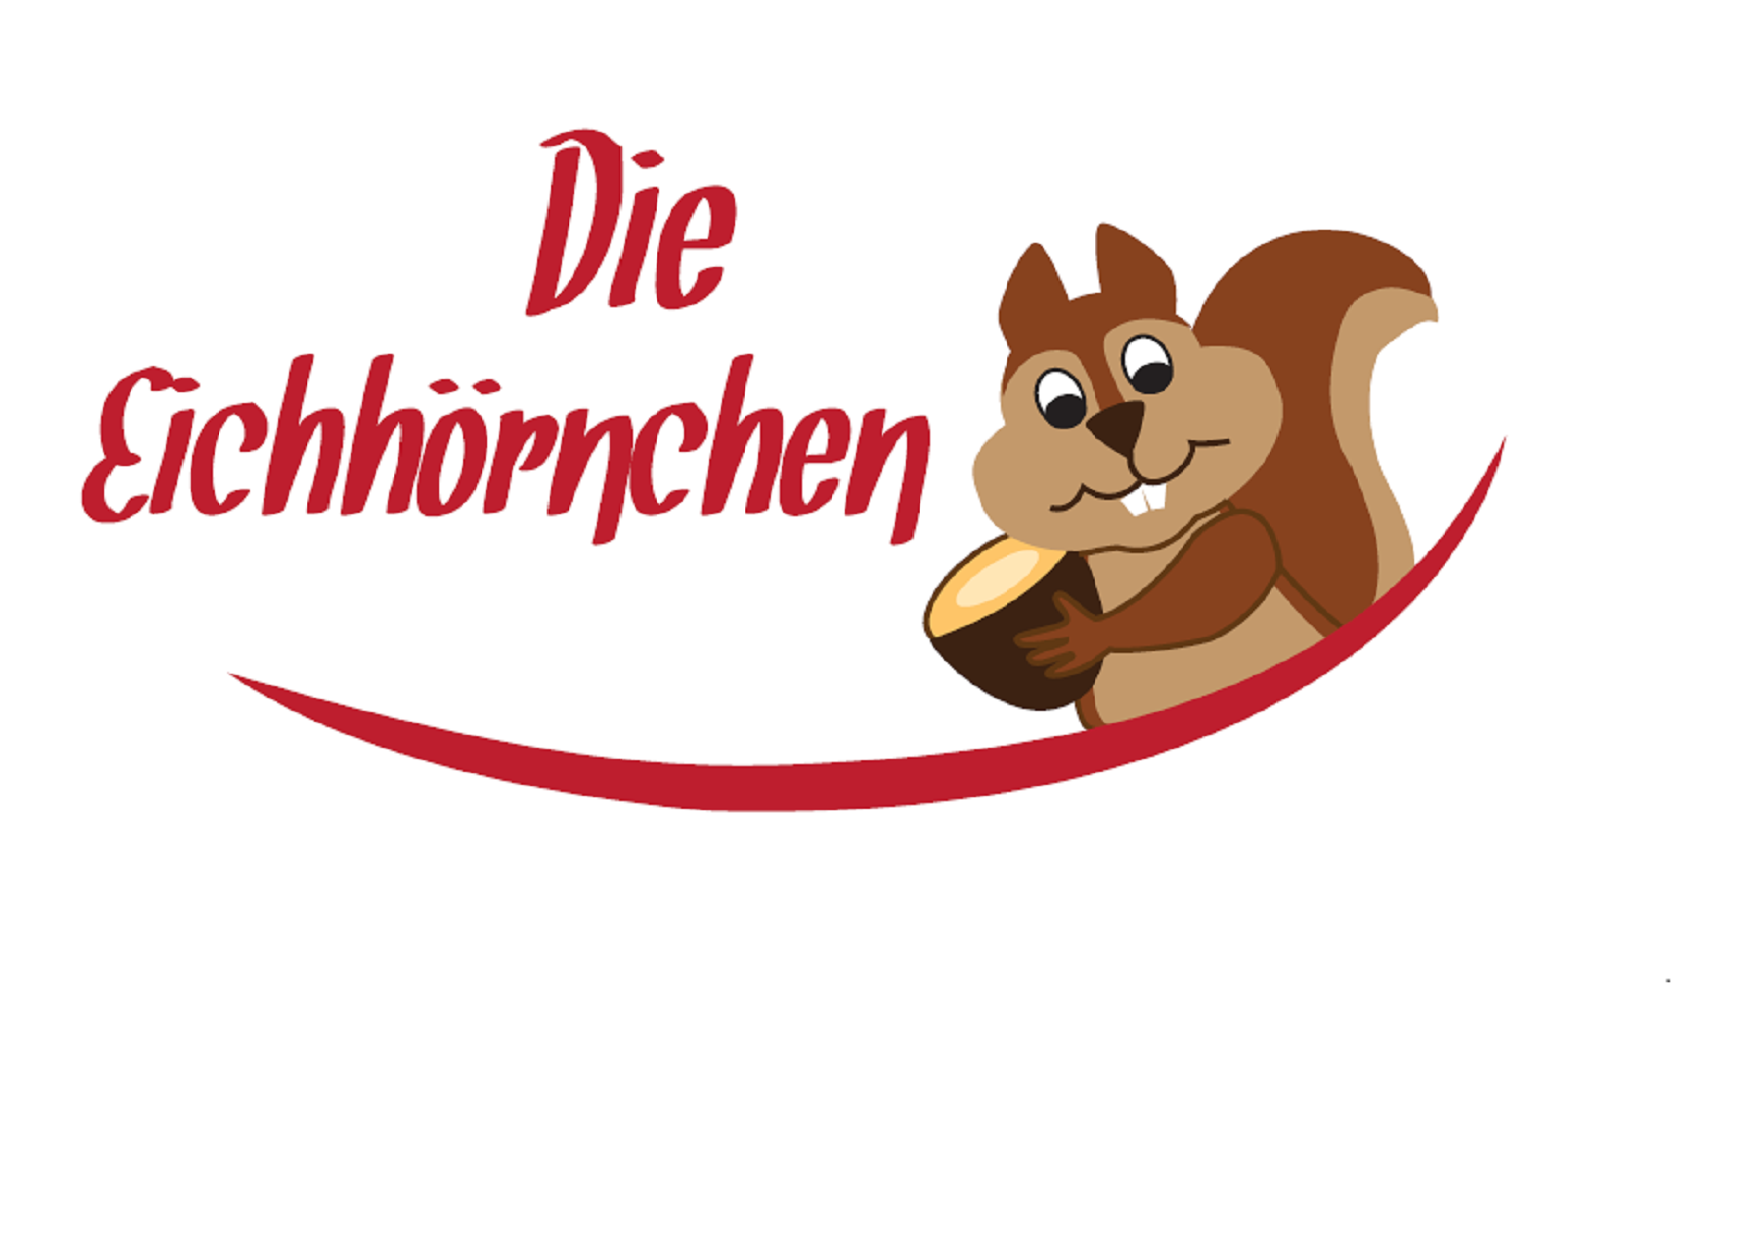 Pflegenest "Die Eichhörnchen"
Rennbahnstr. 20, 40629 Düsseldorf 